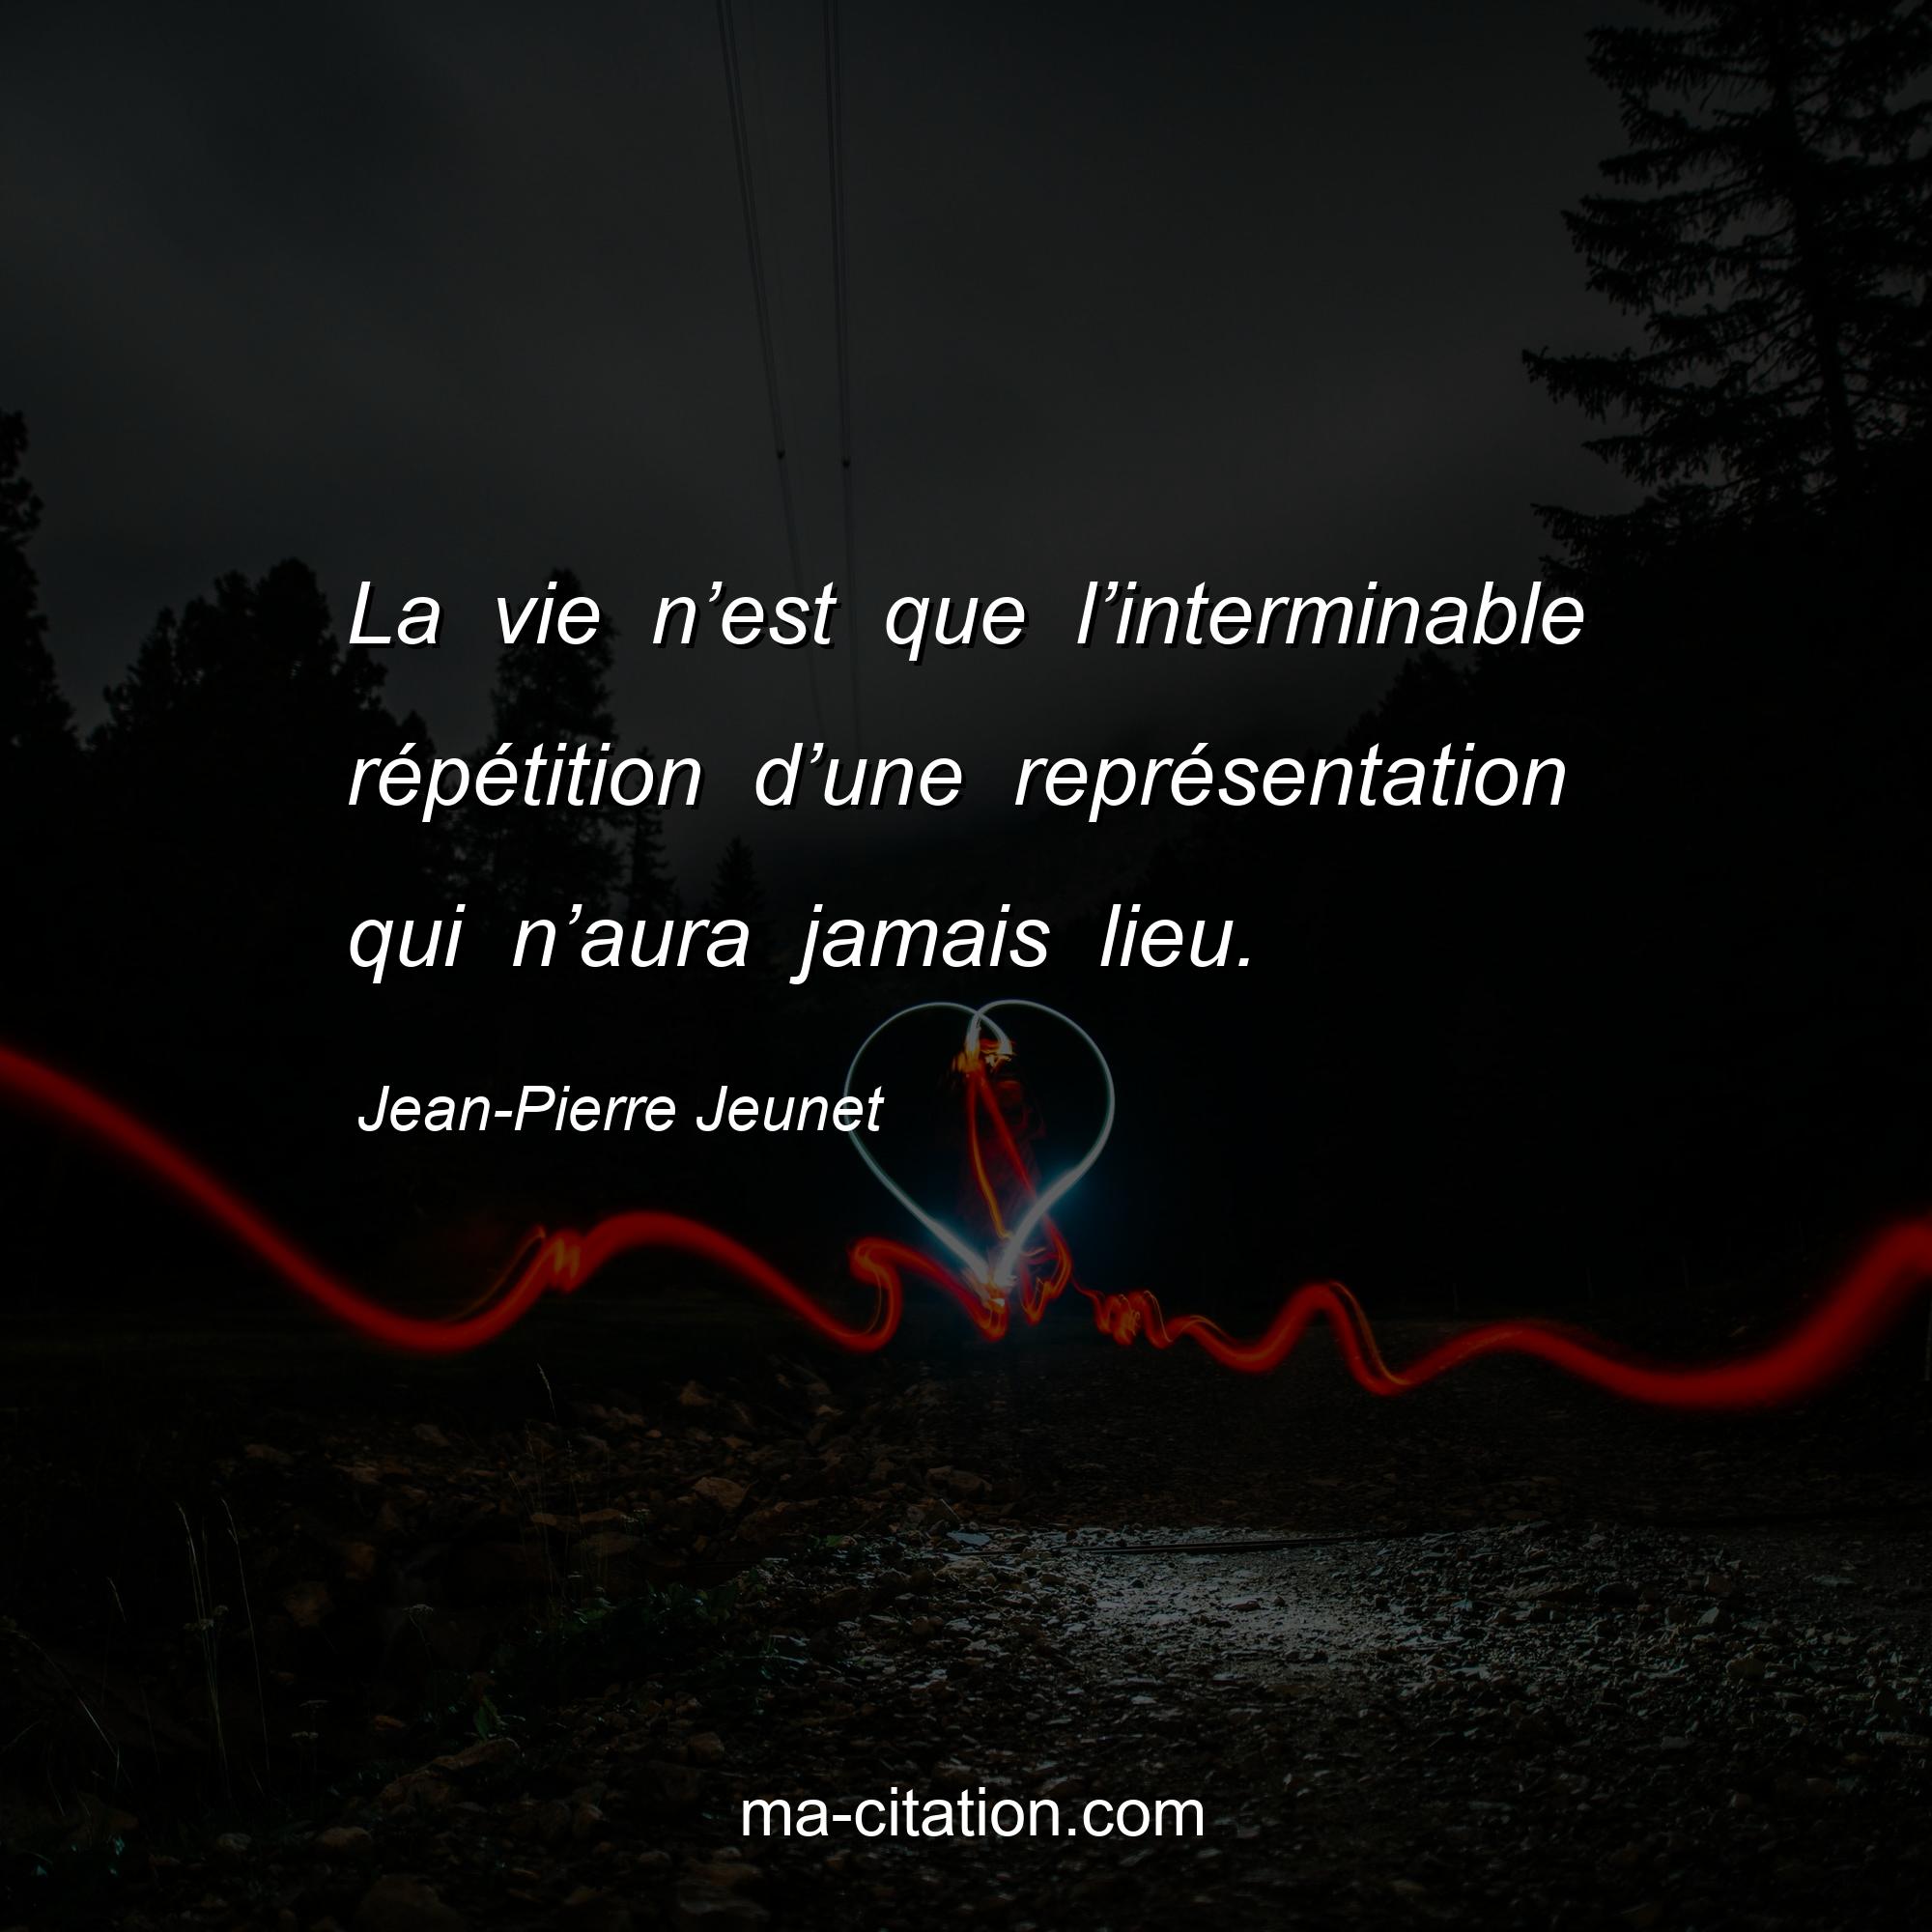 Jean-Pierre Jeunet : La vie n’est que l’interminable répétition d’une représentation qui n’aura jamais lieu.